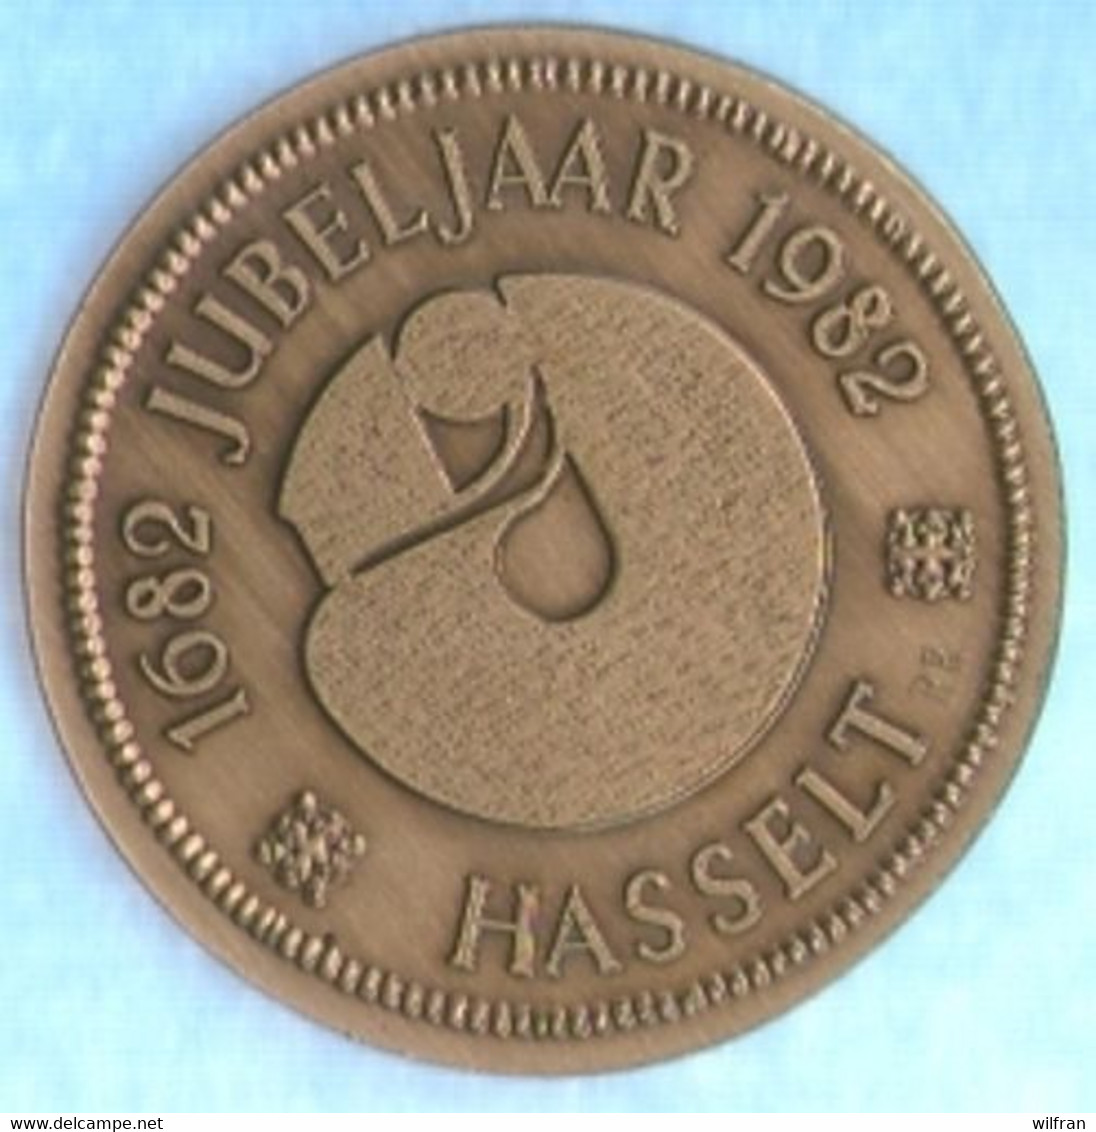 4133 Vz Virga Jesse - Kz 1682 Jubeljaar 1982 Hasselt - Gemeentepenningen